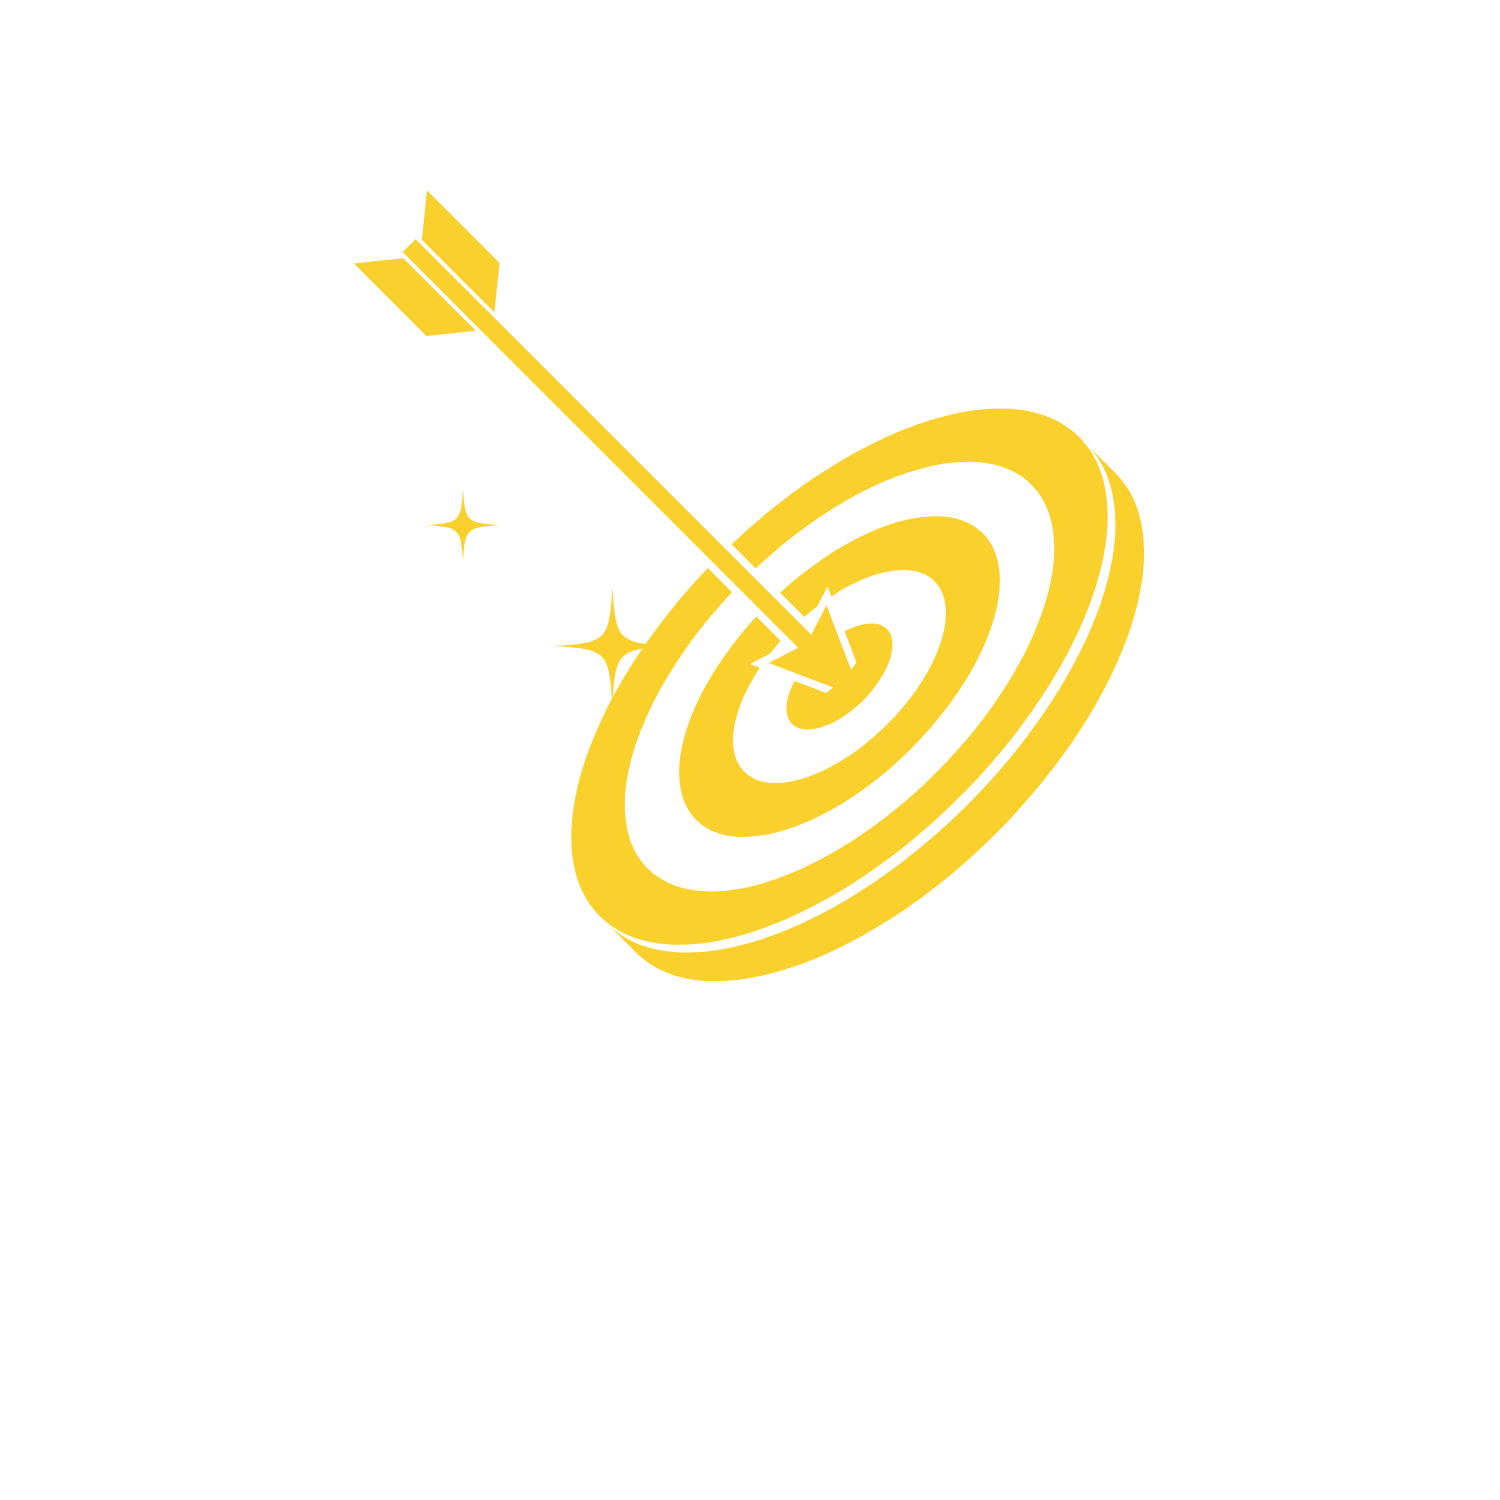 Trickytests